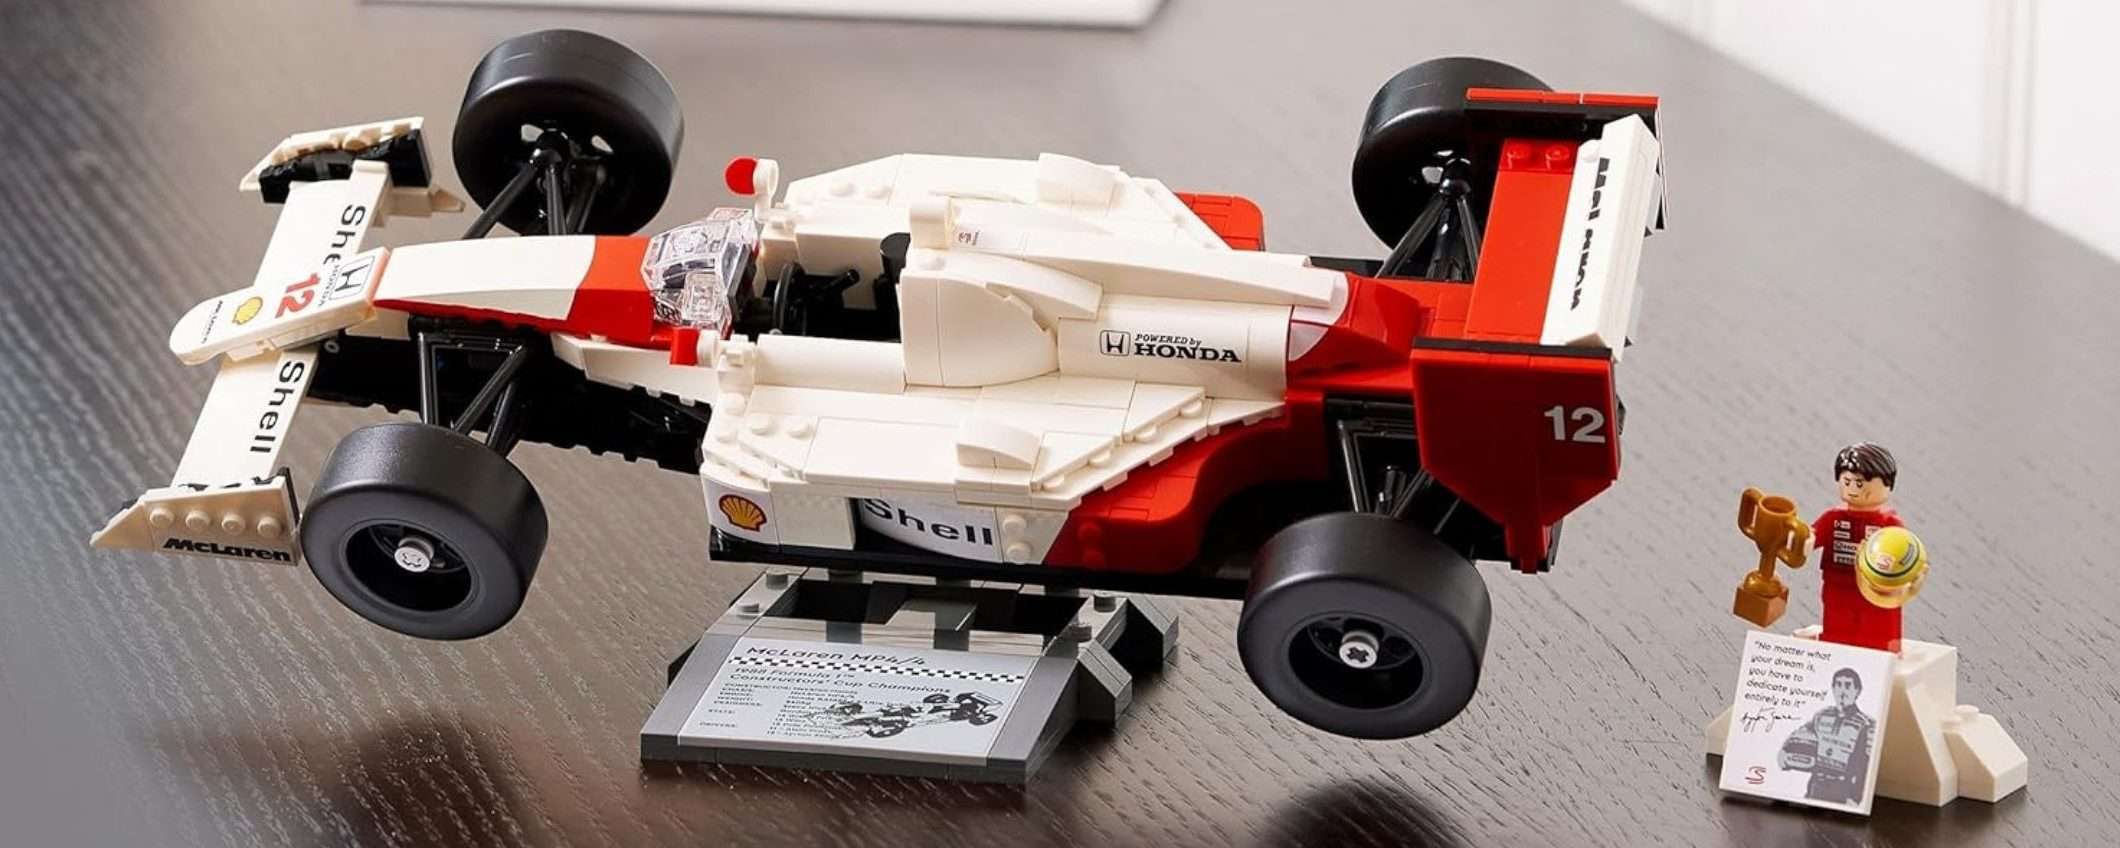 La LEGO McLaren di Ayrton Senna è in SCONTO su Amazon: festeggia il mito delle corse